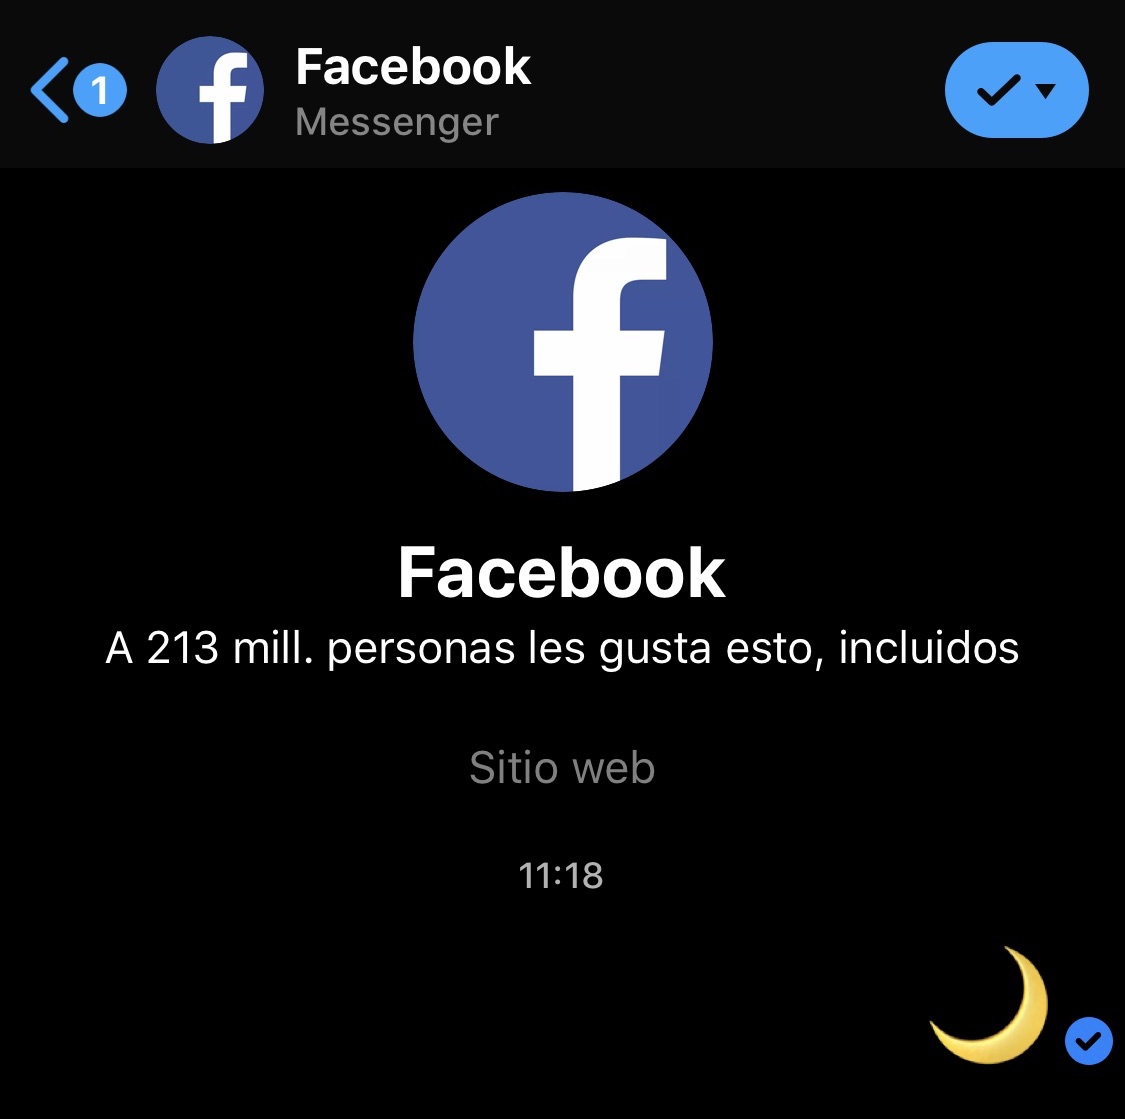 Un nuevo "truco" llegó a los smartphones, se trata de cómo activar el modo nocturno en Facebook Messenger para que la interfaz cambie a un tono oscuro.